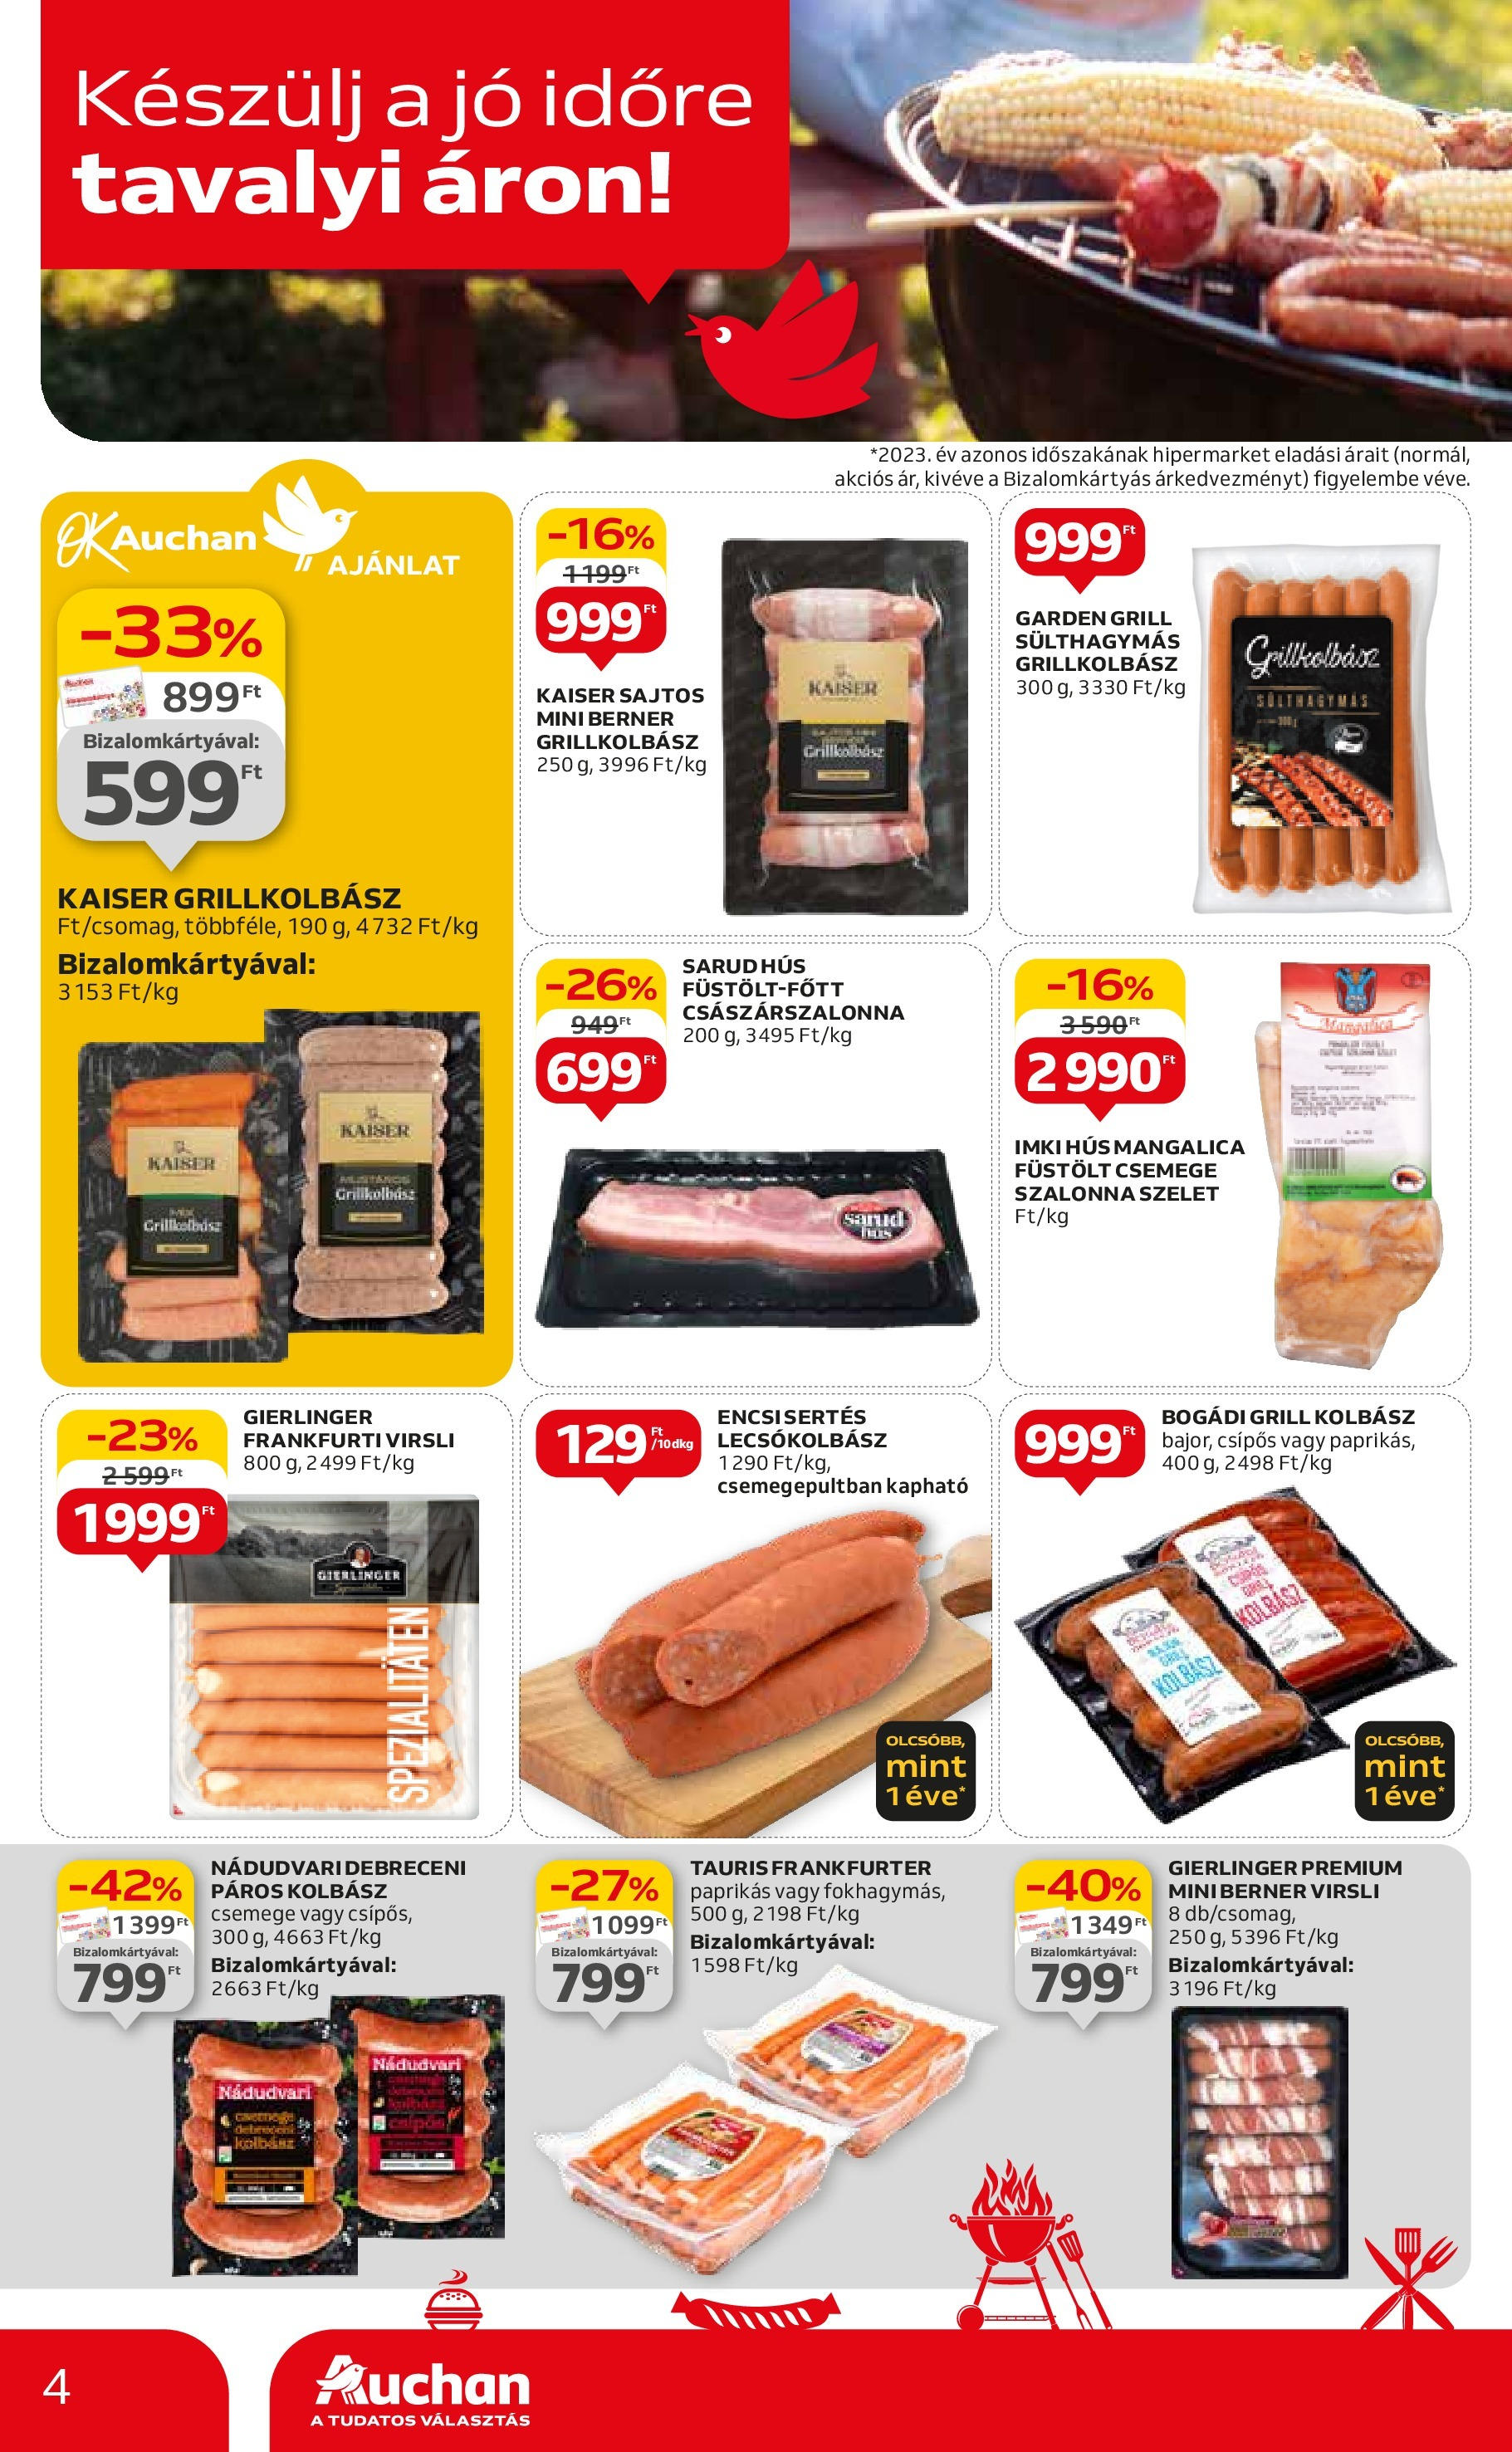 Auchan  Akciós újság - 2024.04.25. -tól/töl > akció, szórólap 🛍️ | Oldal: 4 | Termékek: Hús, Grill, Szalonna, Lecsókolbász